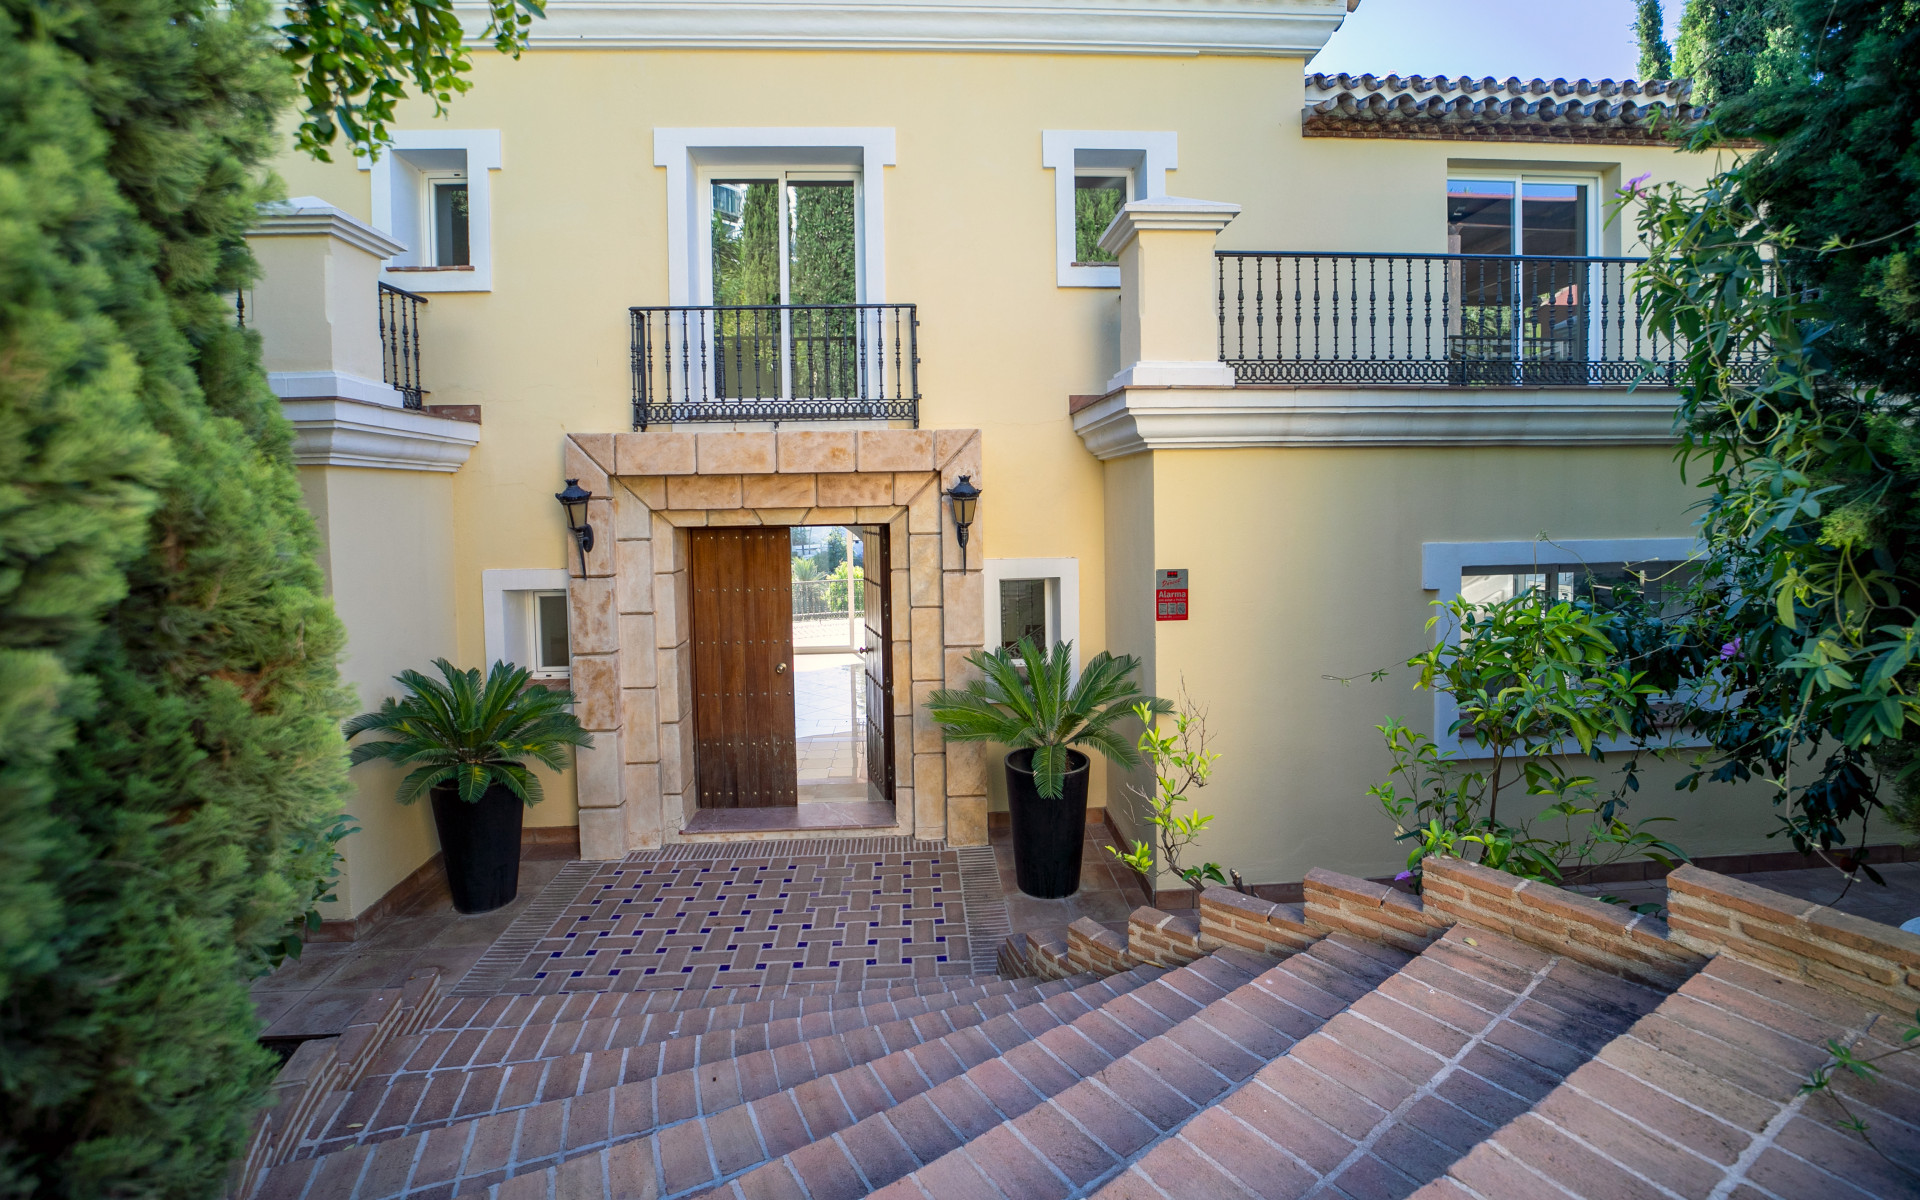 Villa clásica situada en La Quinta en la urbanización cerrada de El Herrojo Alto, Benahavís.